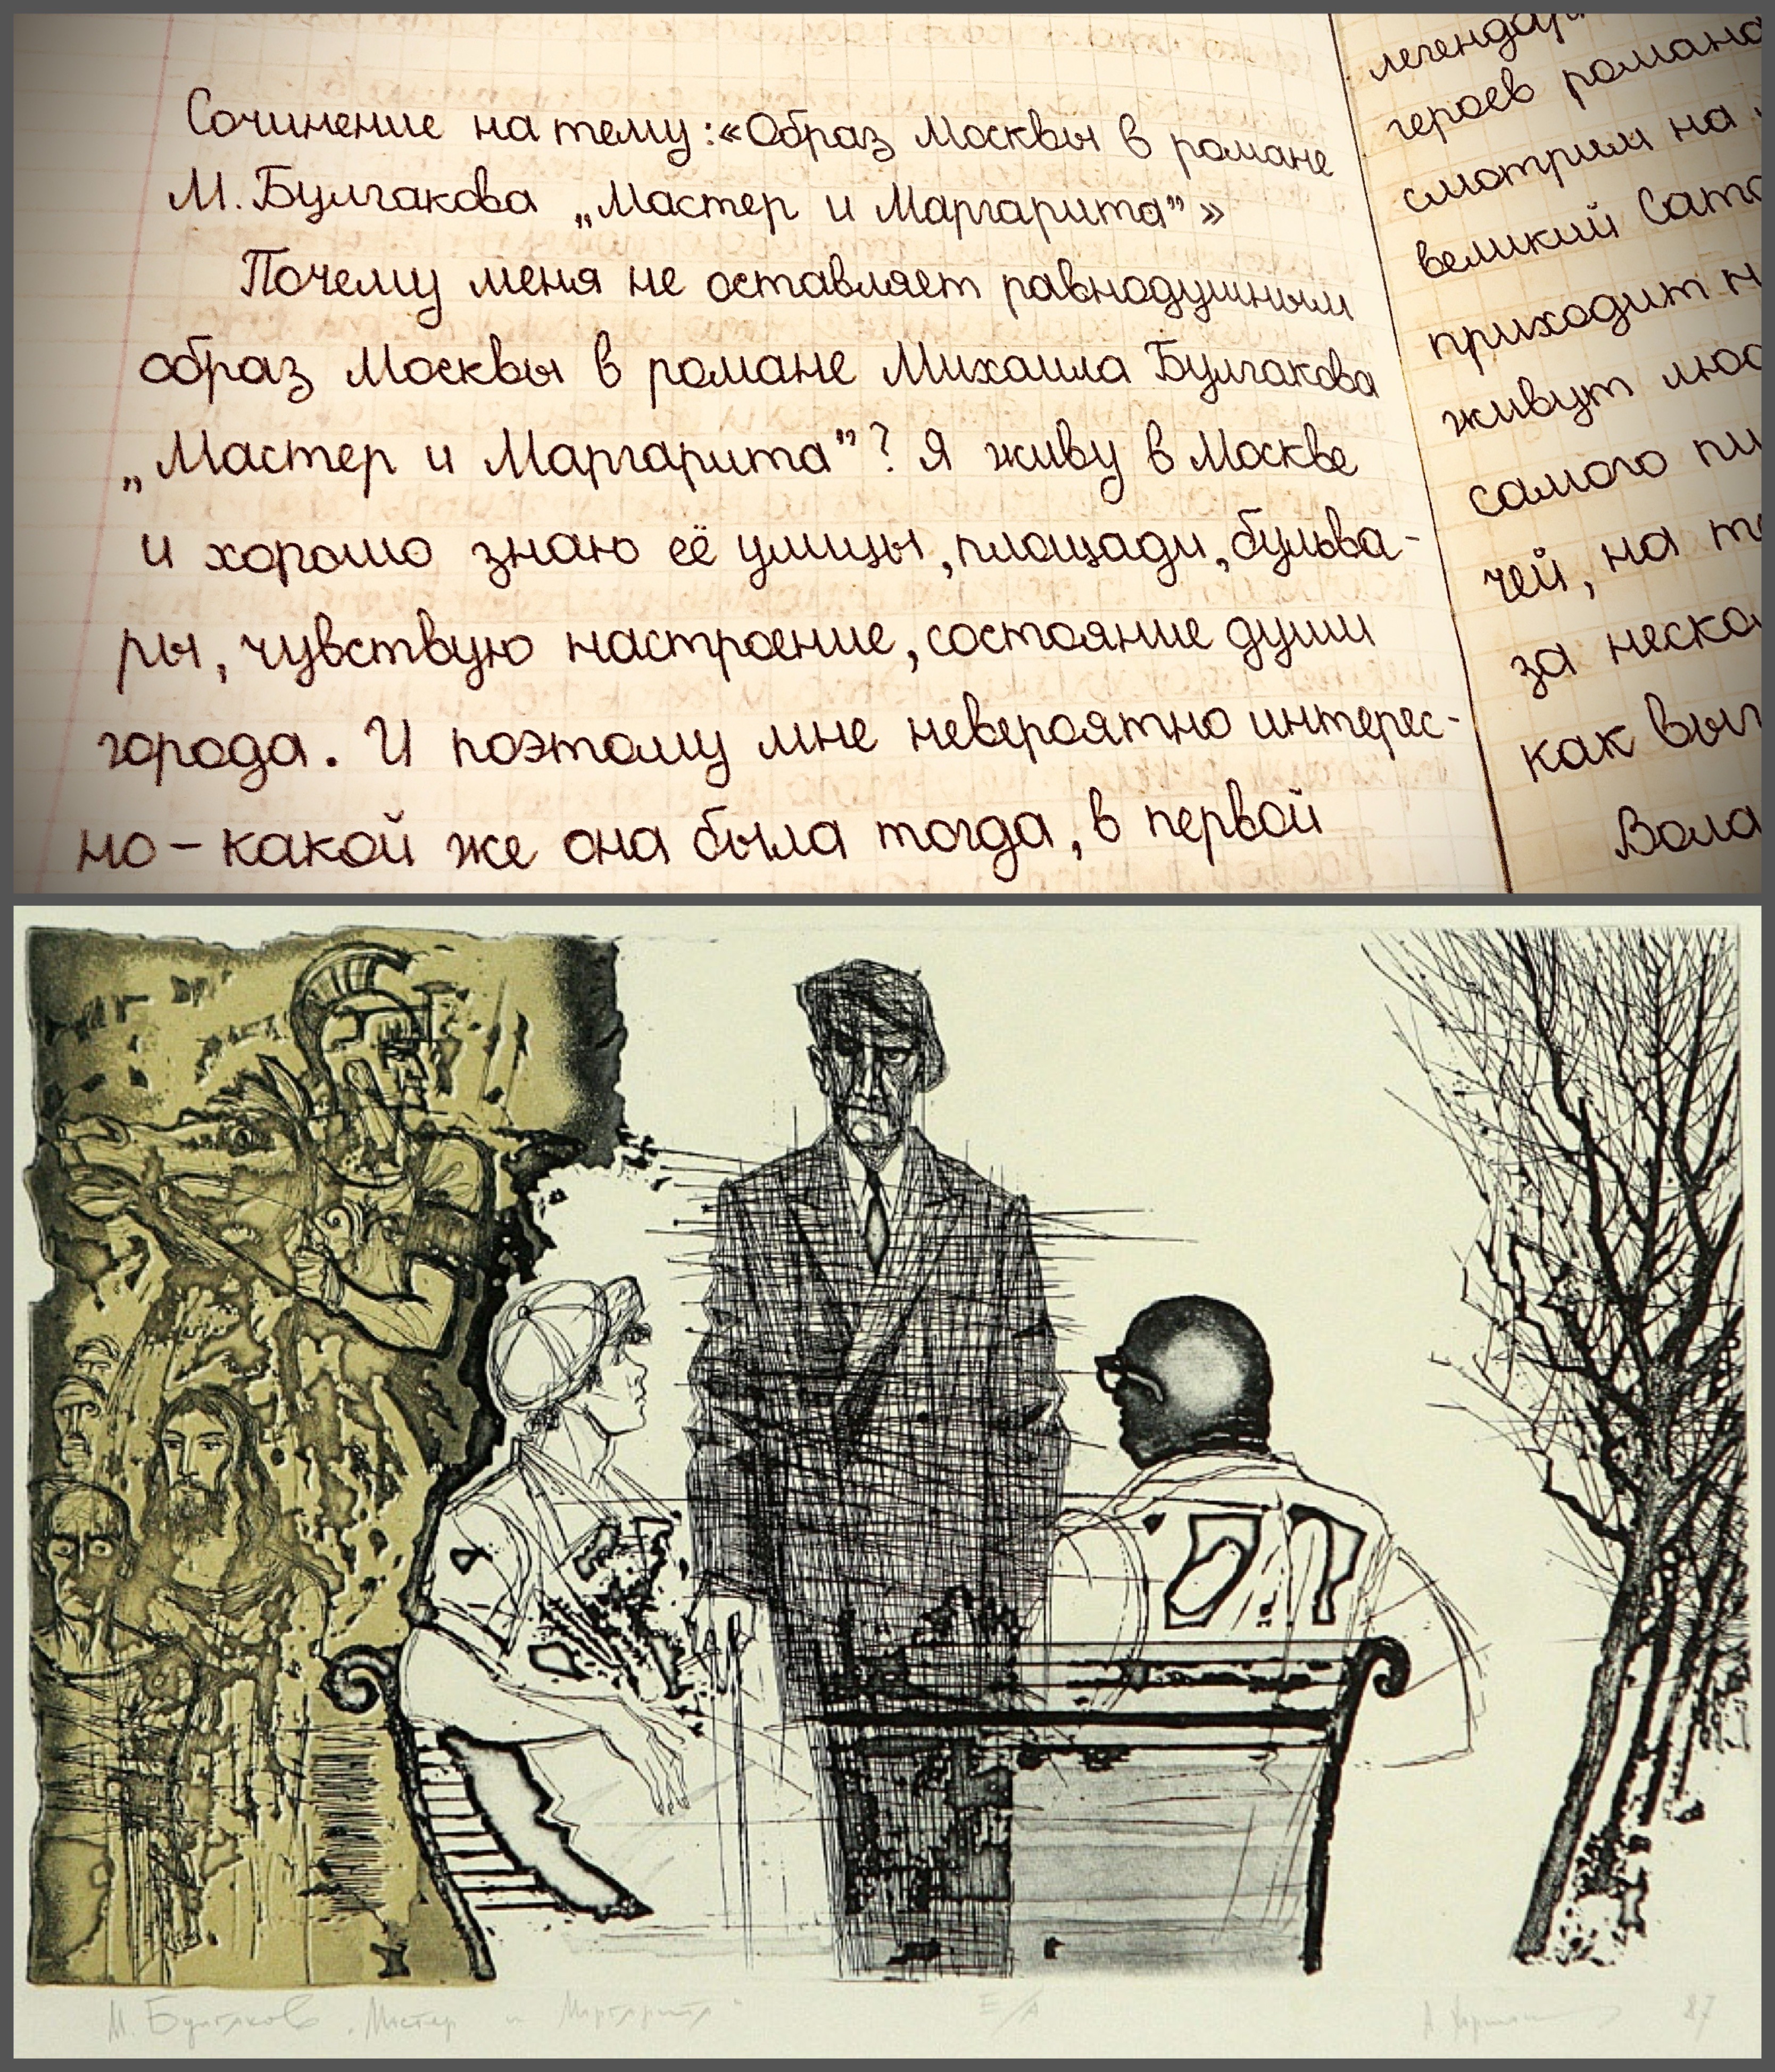 Сочинение по теме Сатирическое изображение Москвы и москвичей в романе М. Булгакова 